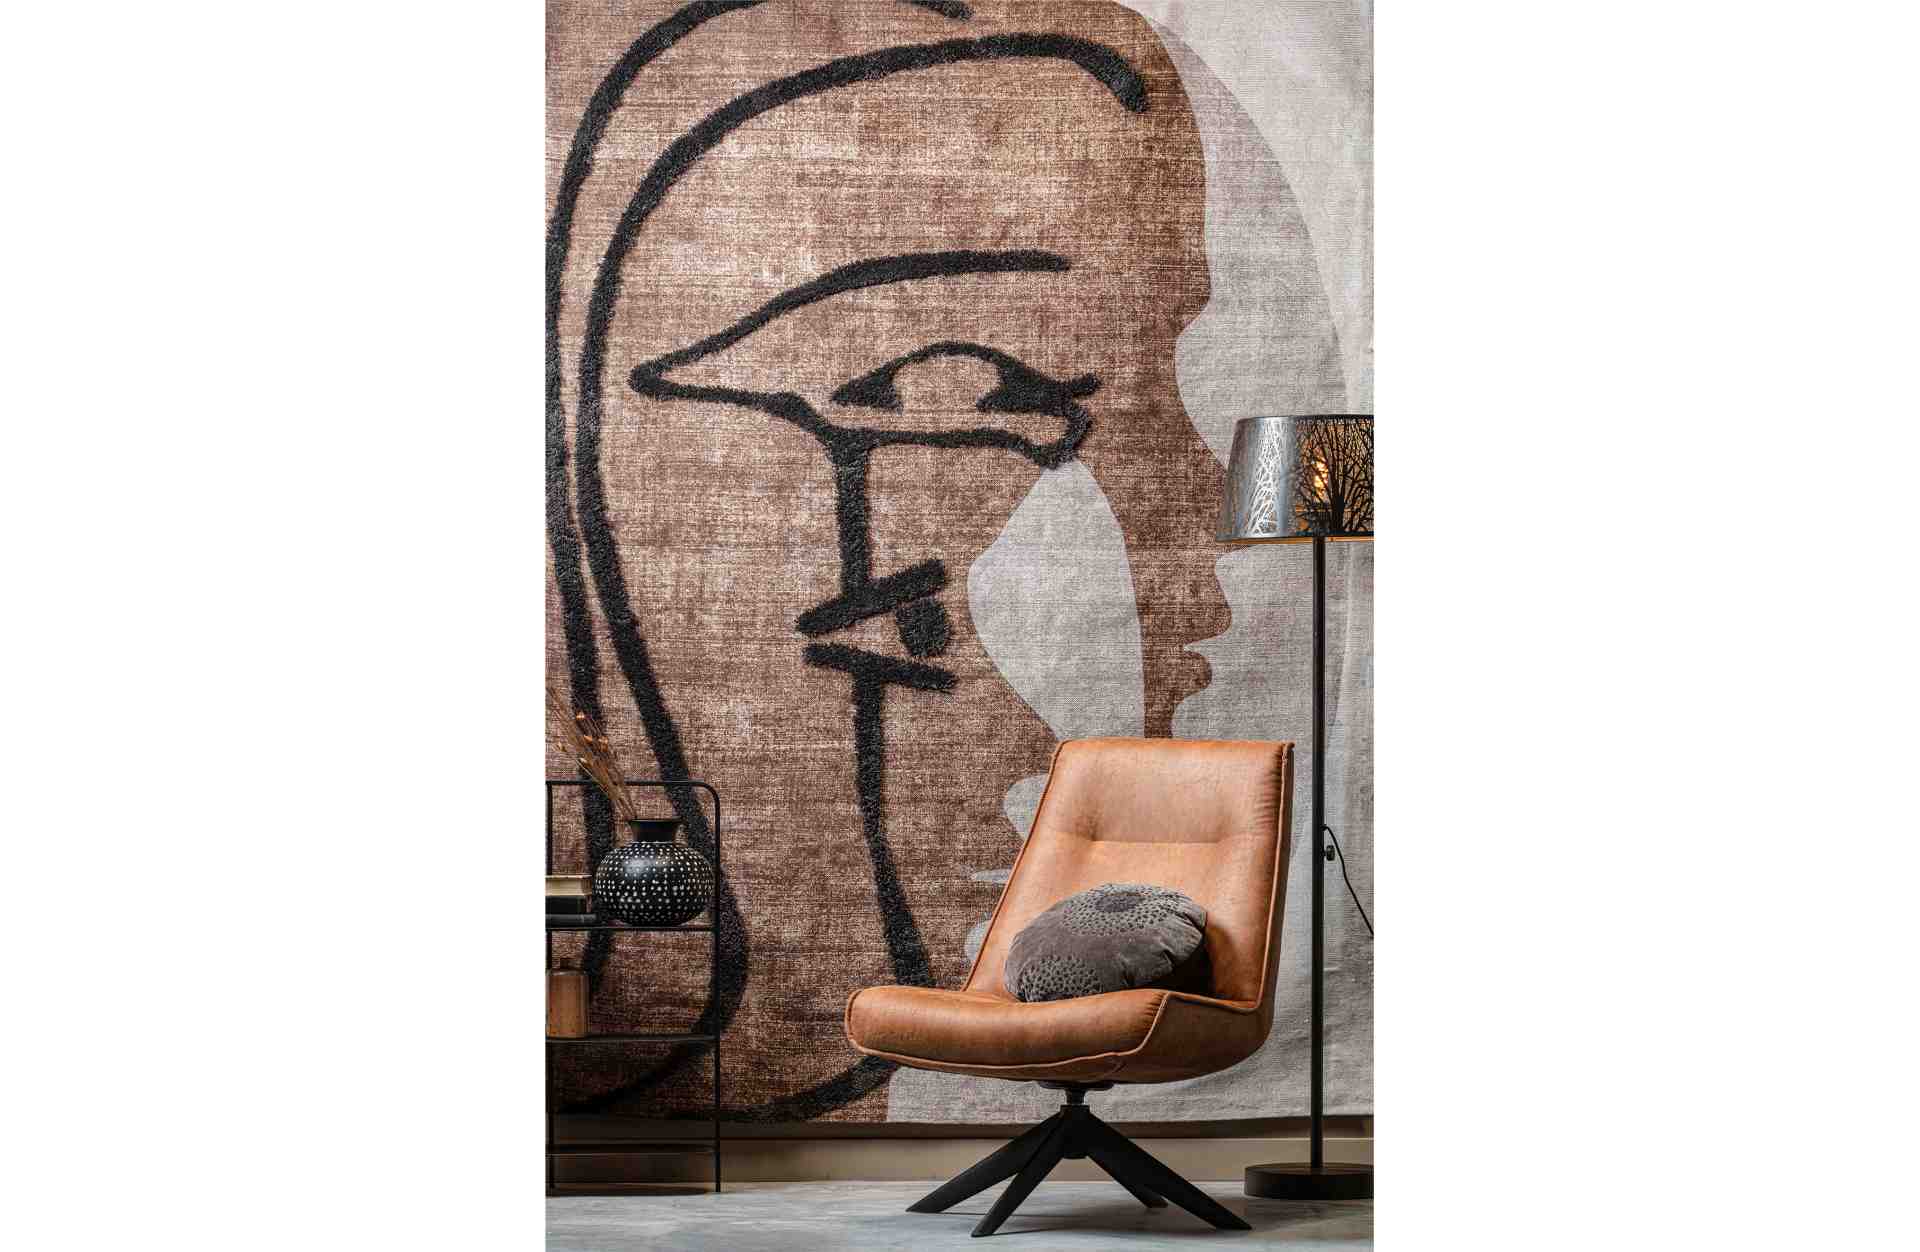 Der Wandteppich Roden überzeugt mit seinem modernen Design. Gefertigt wurde er aus einem Kombinationsgewebe aus Wolle und Kunststoff, welche einen braunen Farbton besitzt. Der Teppich besitzt eine Größe von 170x240 cm.